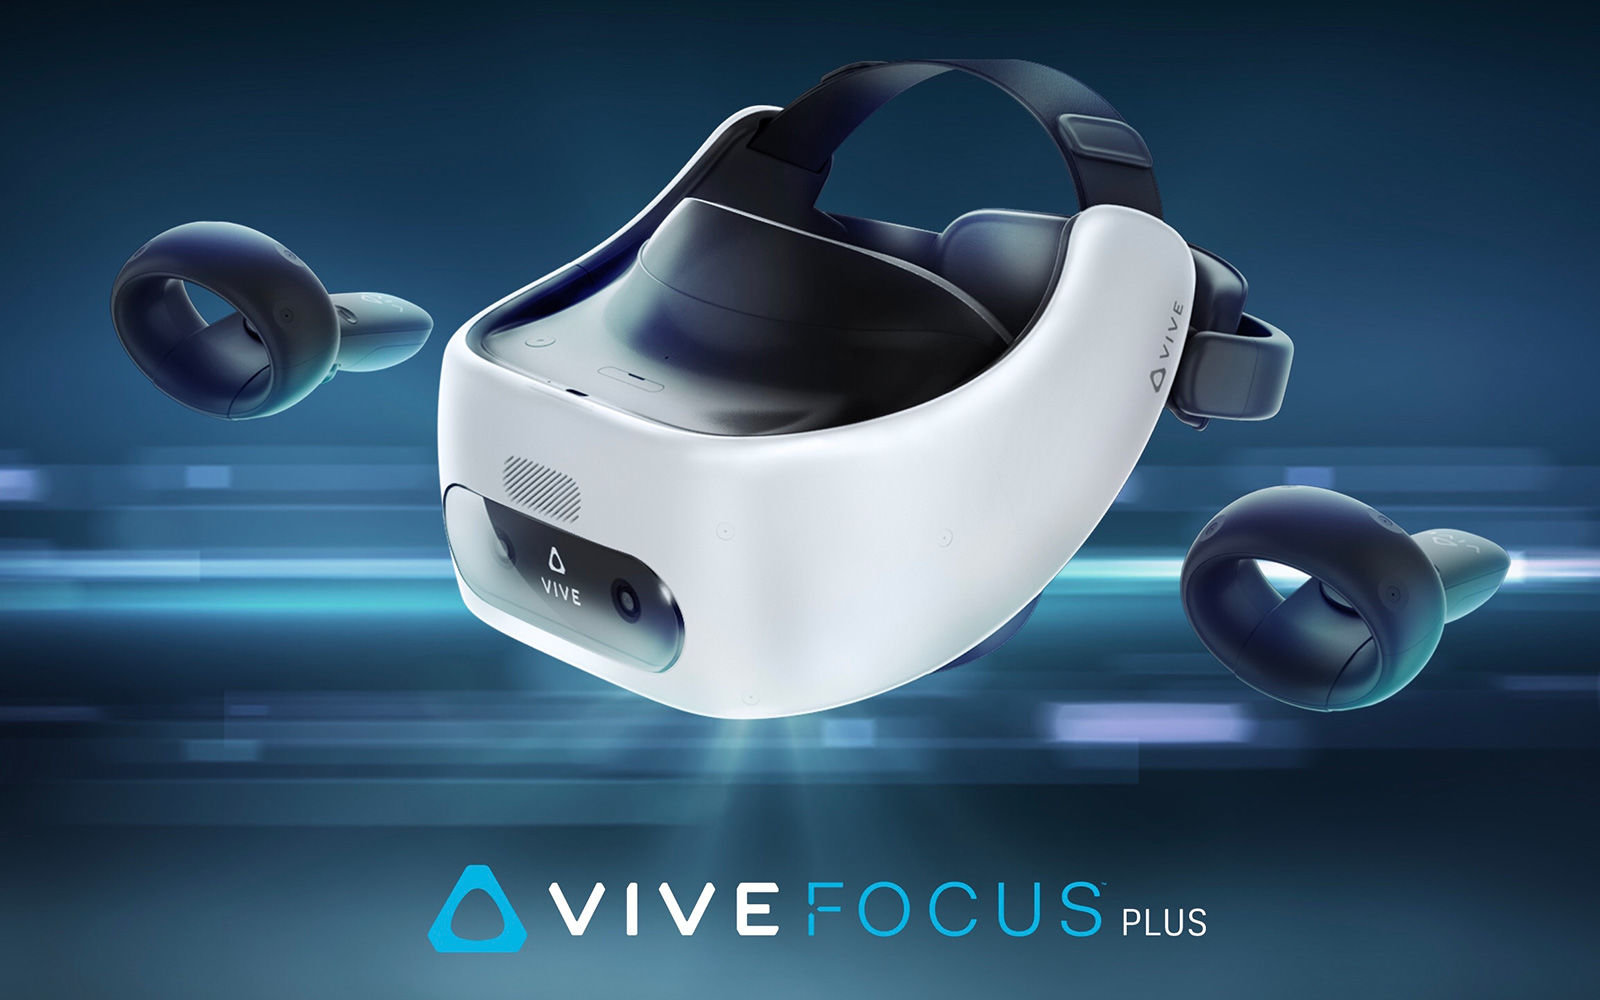 Giới thiệu Bộ kính thực tế ảo HTC Vive Focus Plus